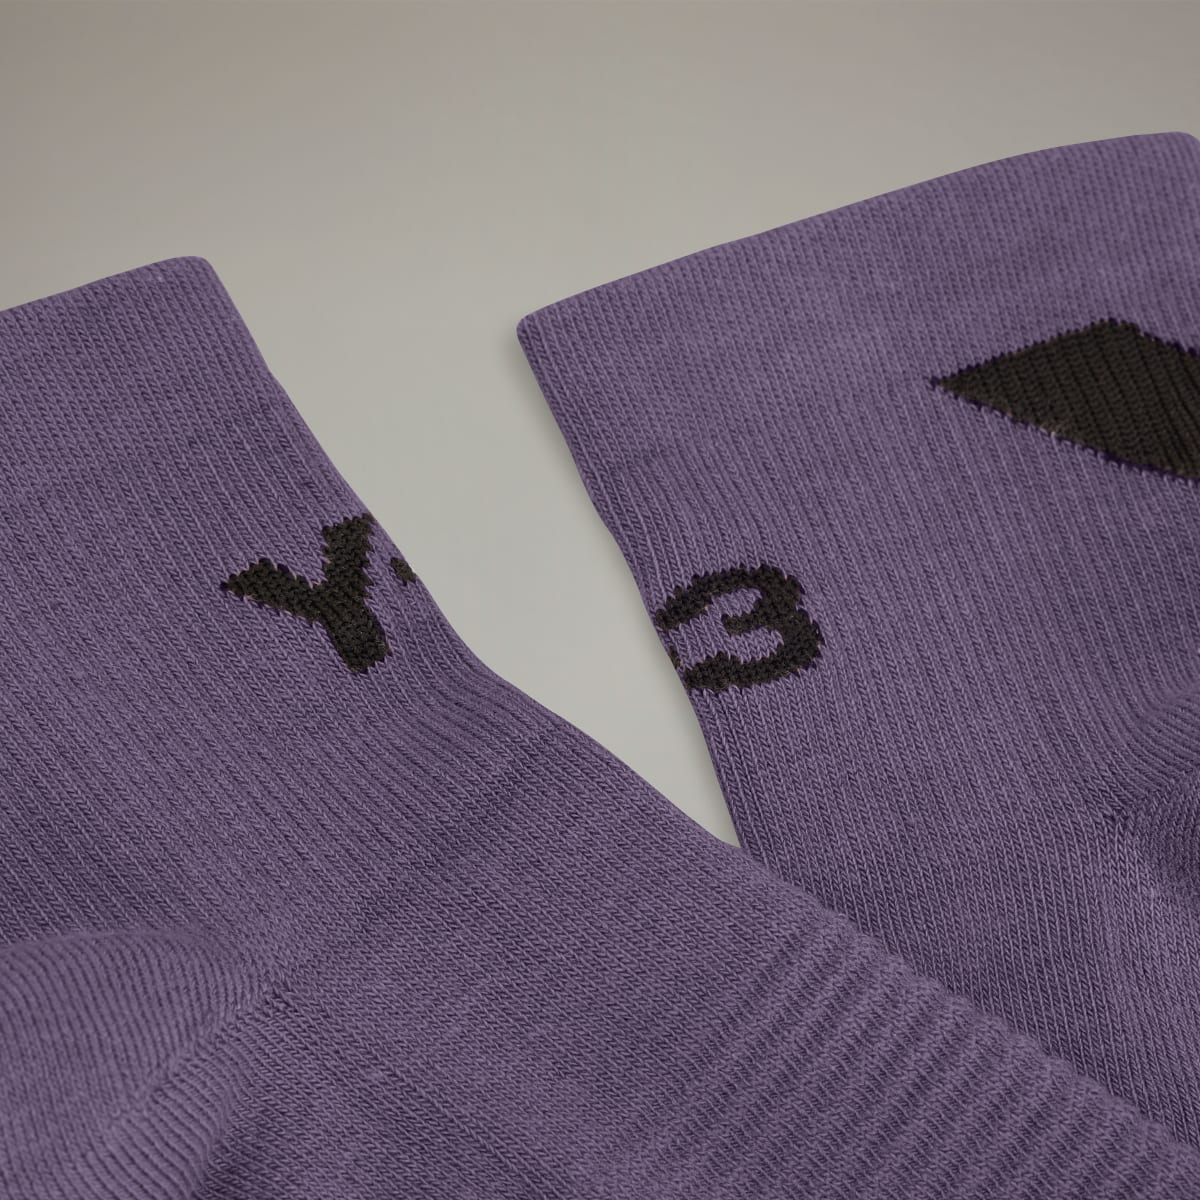 Adidas Y-3 Lo Socks. 4